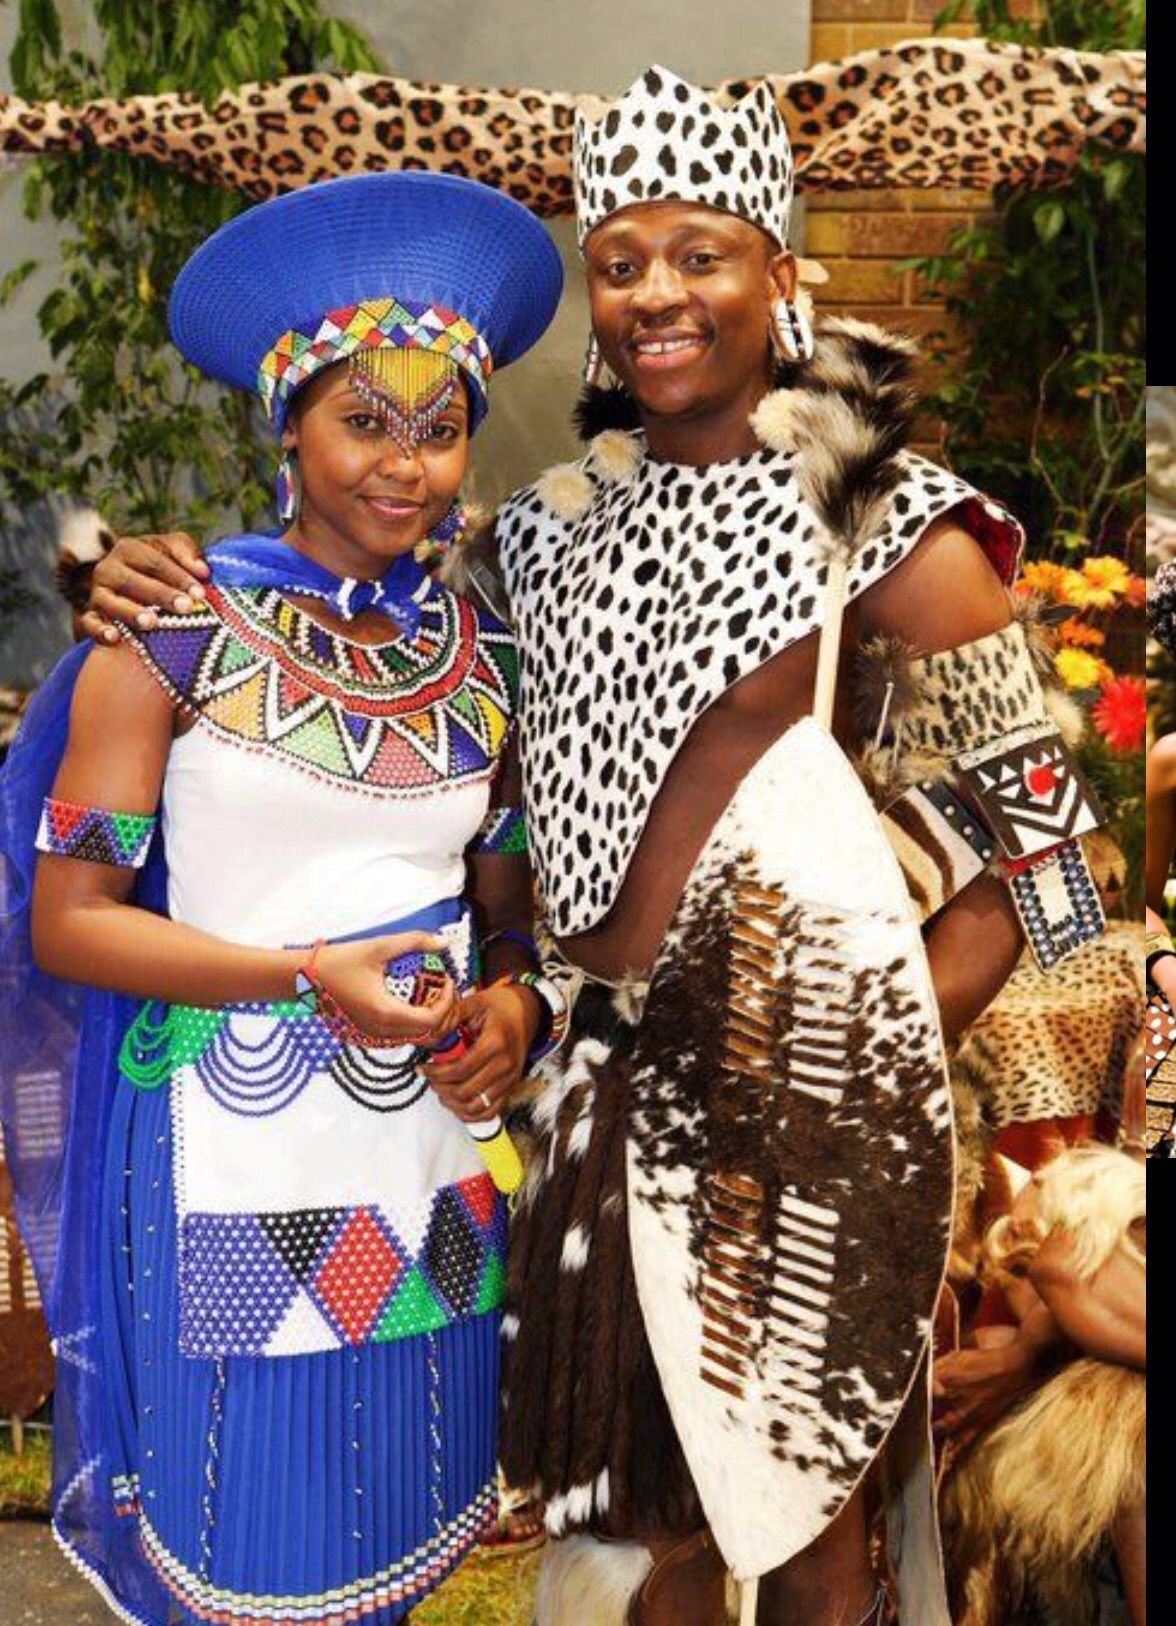 Костюм негритянки. Африкан Зулу Африка племя. Зулусы ЮАР костюм. ЮАР национальный костюм Зулу. Кения племя Масаи.